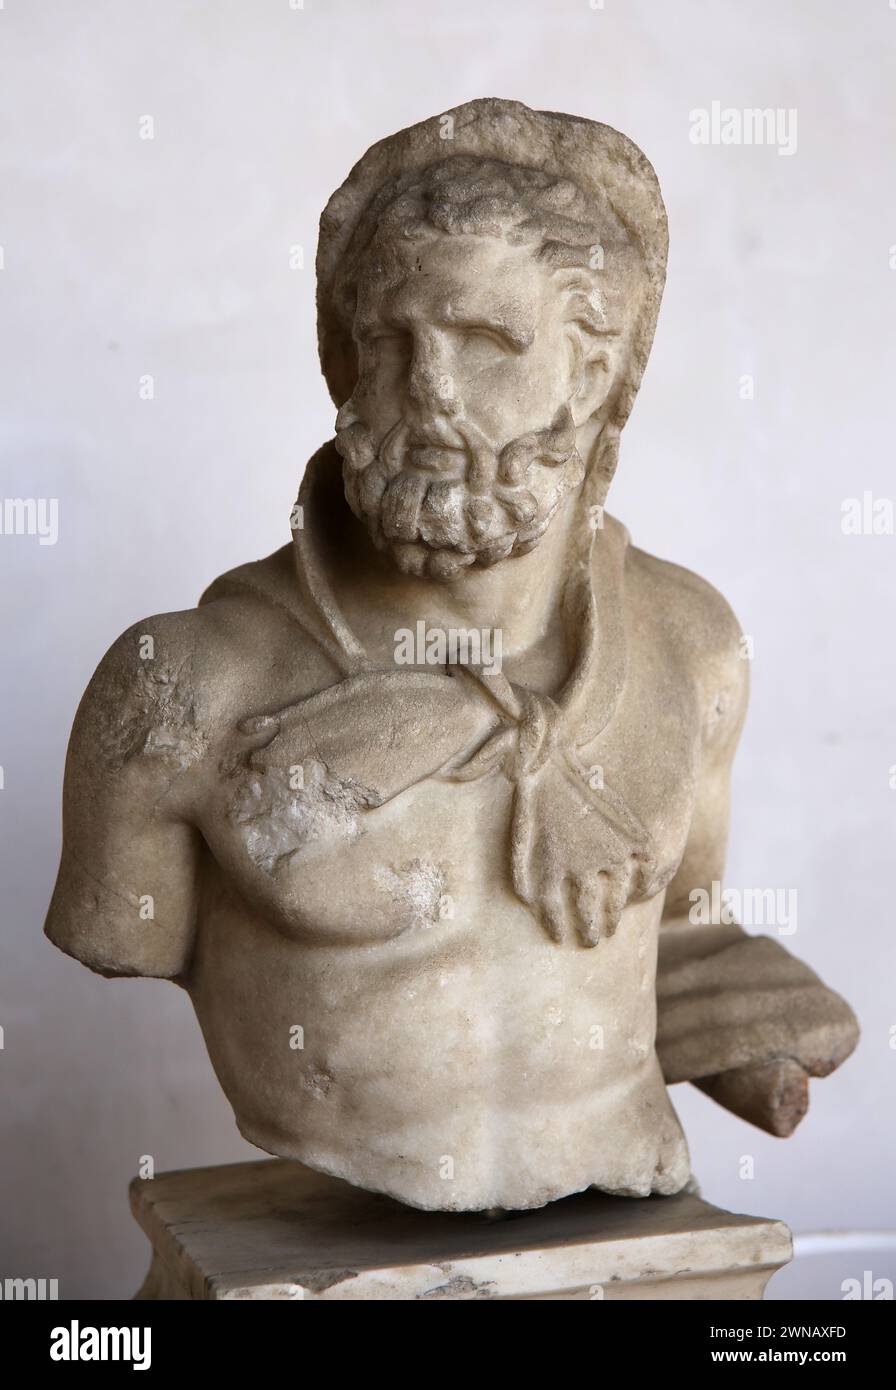 Statue d'Héraclès avec la tête couverte par Leoté. Marbre. 117-130 AD. Provenance inconnue. Musée national romain (Thermes de Dioclétien). Rome. Italie. Banque D'Images